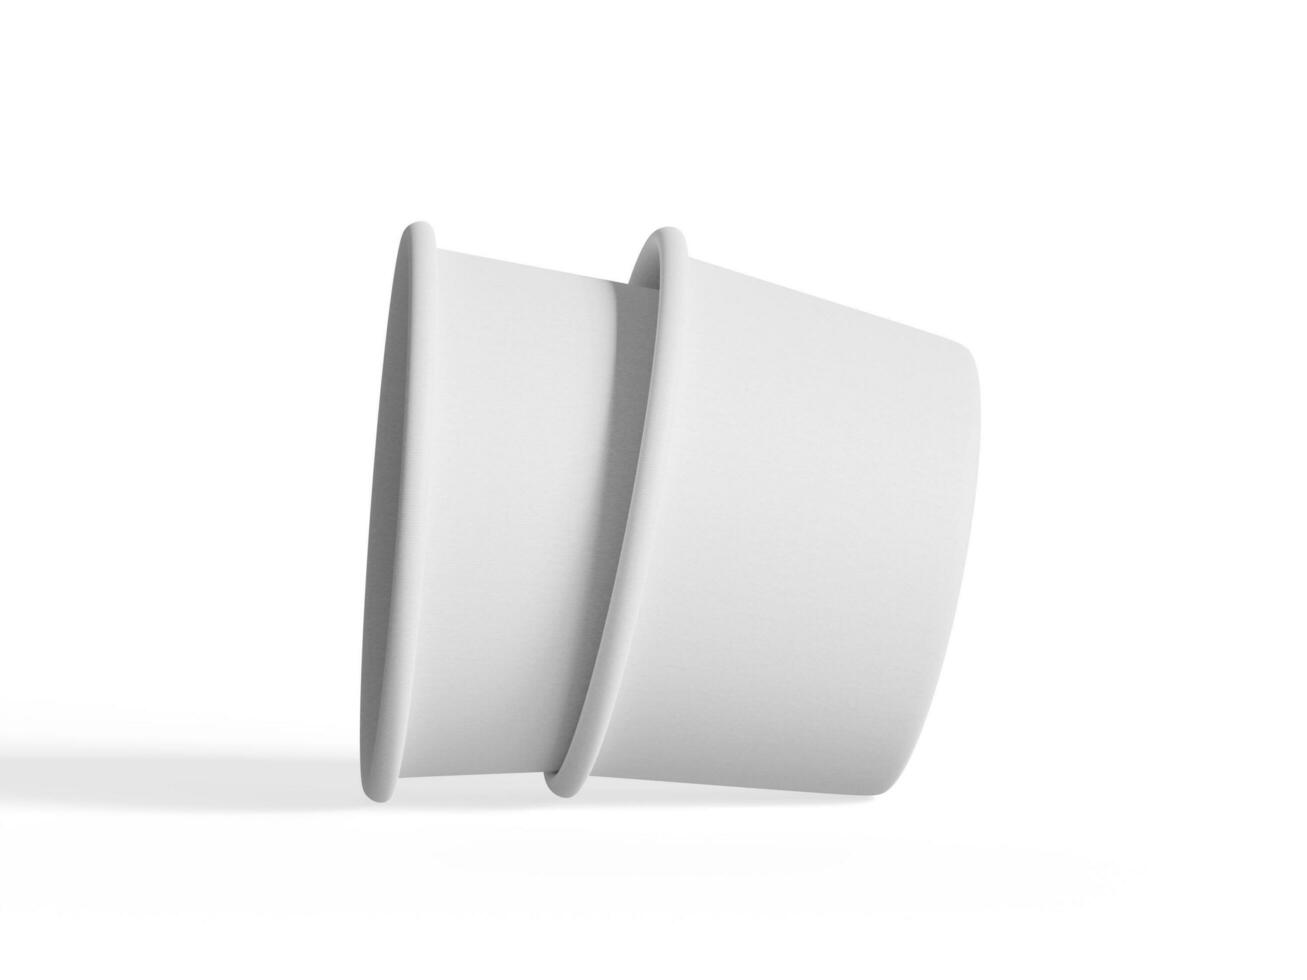 gelo creme recipiente para brincar coleção, descartável kraft papel tigela isolado em branco fundo realista 3d ilustração foto